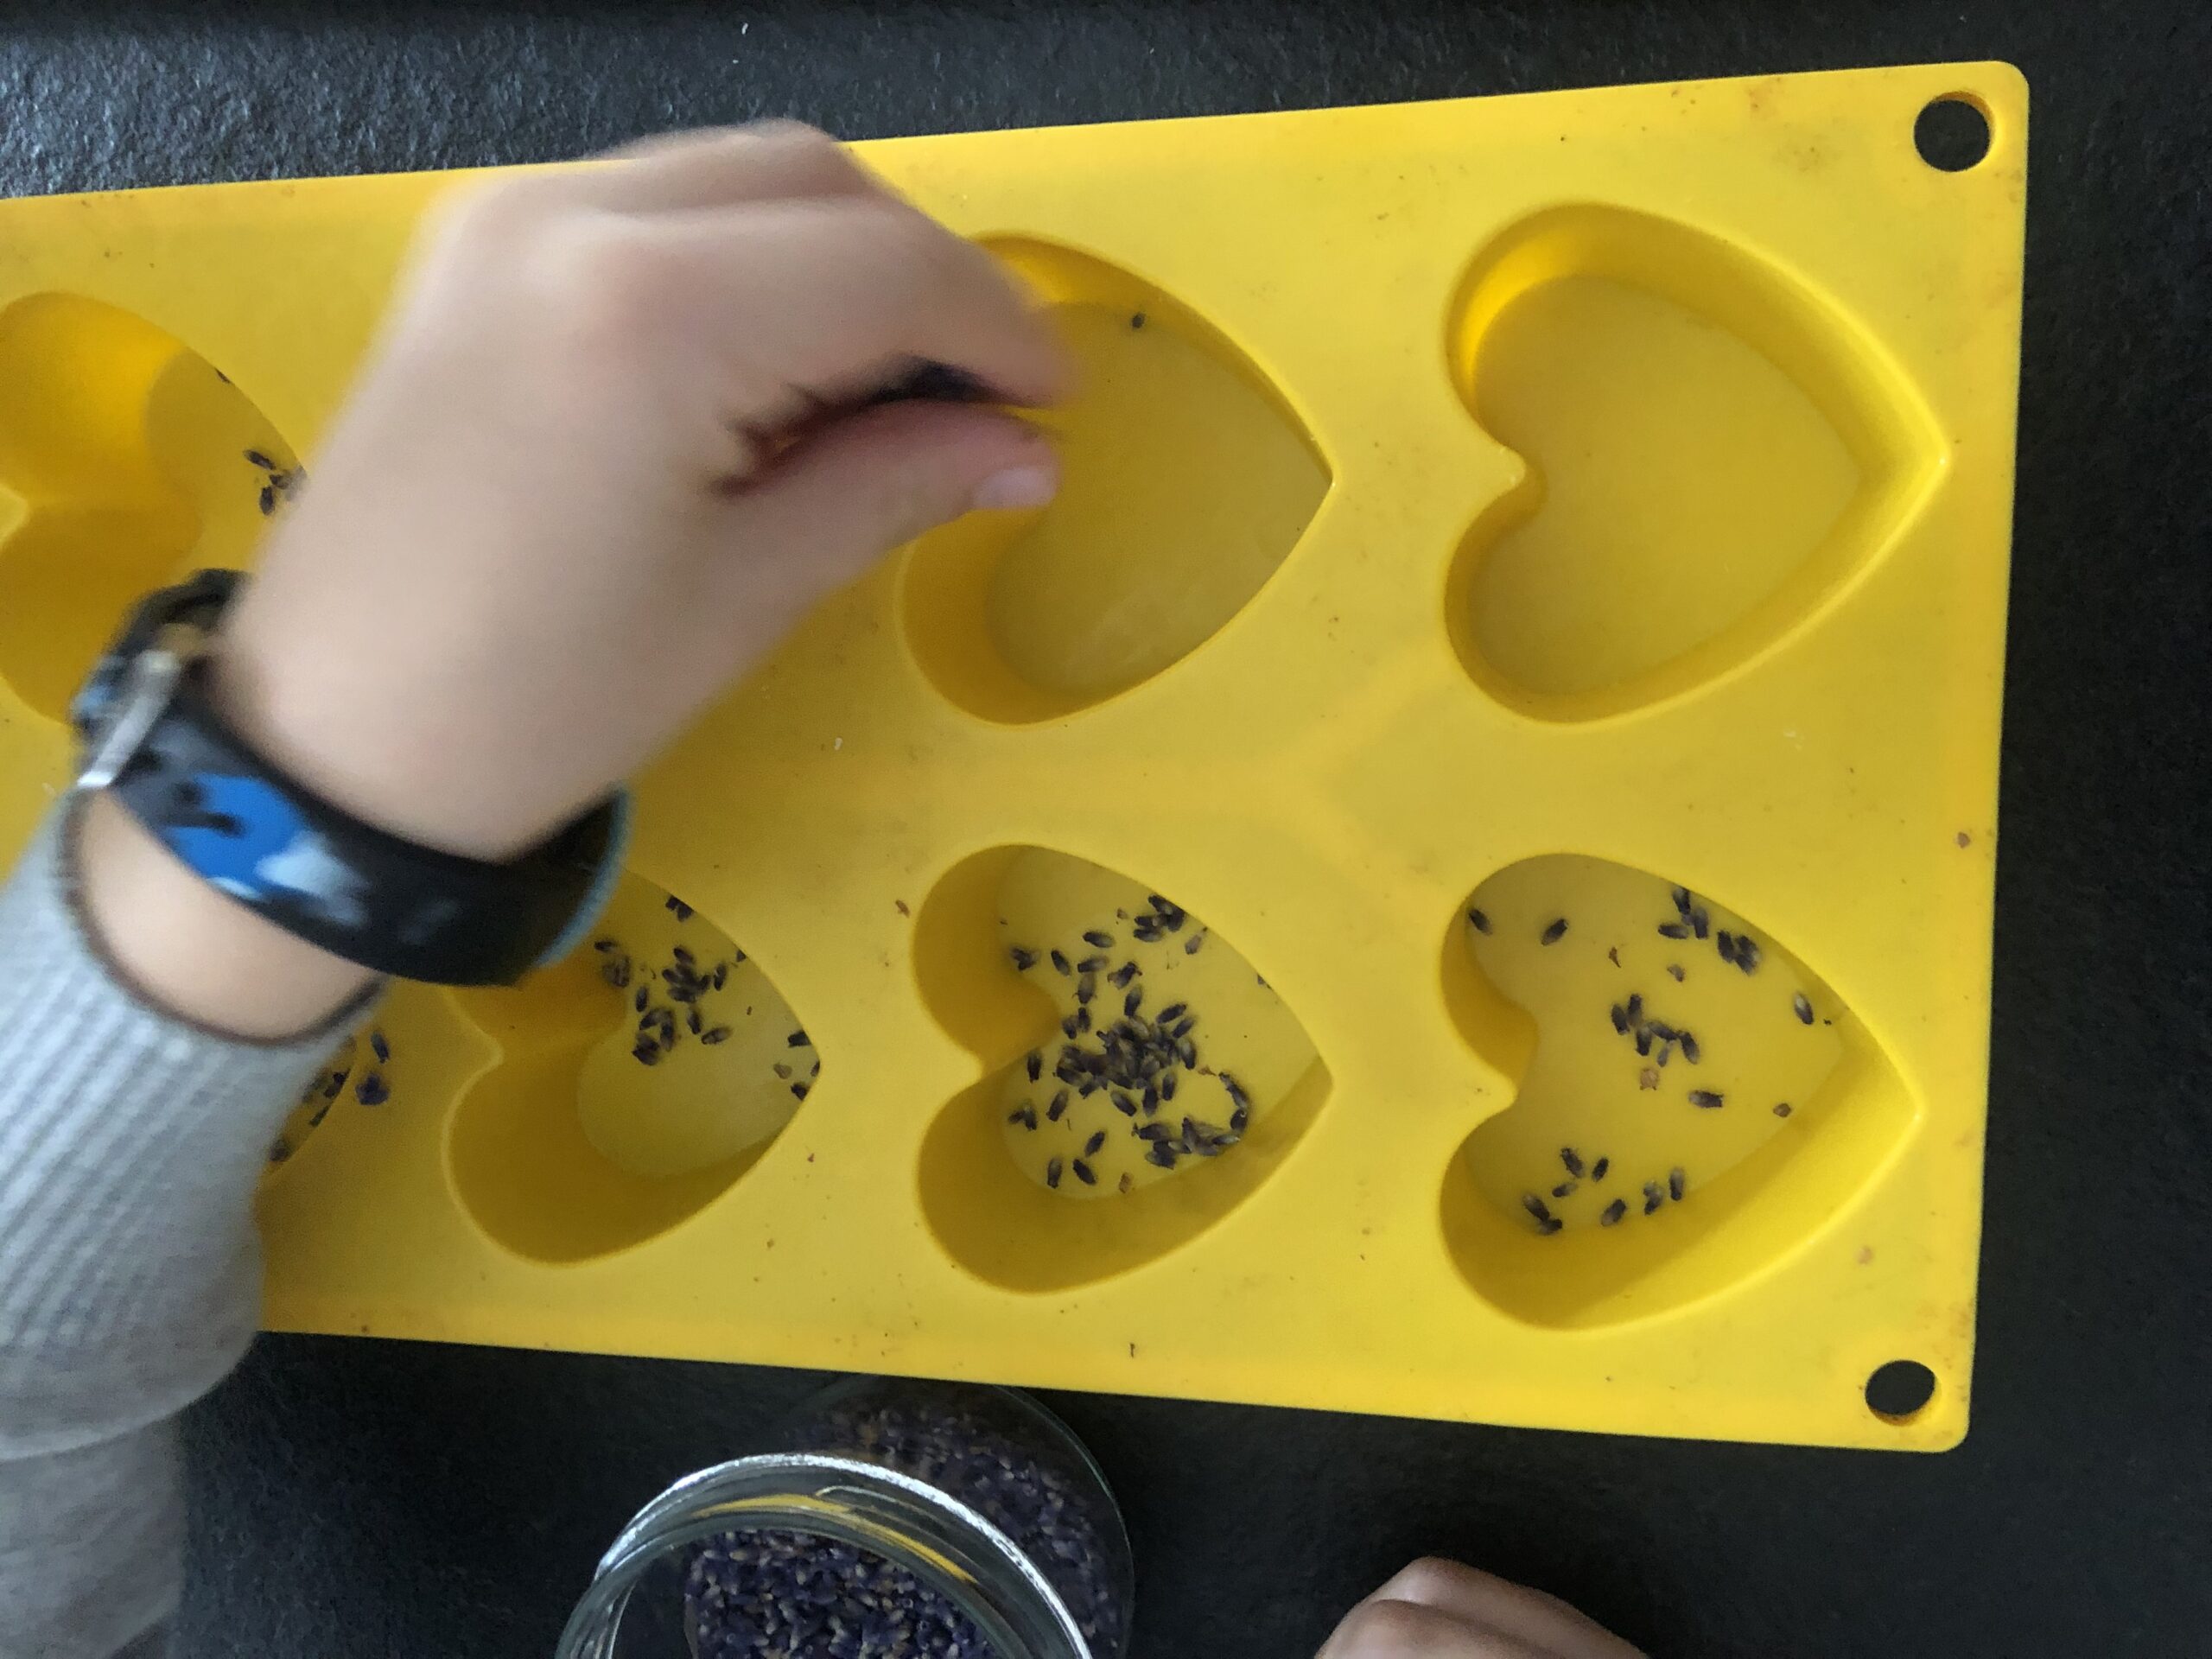 Bild zum Schritt 8 für das Bastel- und DIY-Abenteuer für Kinder: 'Jetzt streut ihr in die Silikonformen etwas getrocknete Lavendelblüten.'